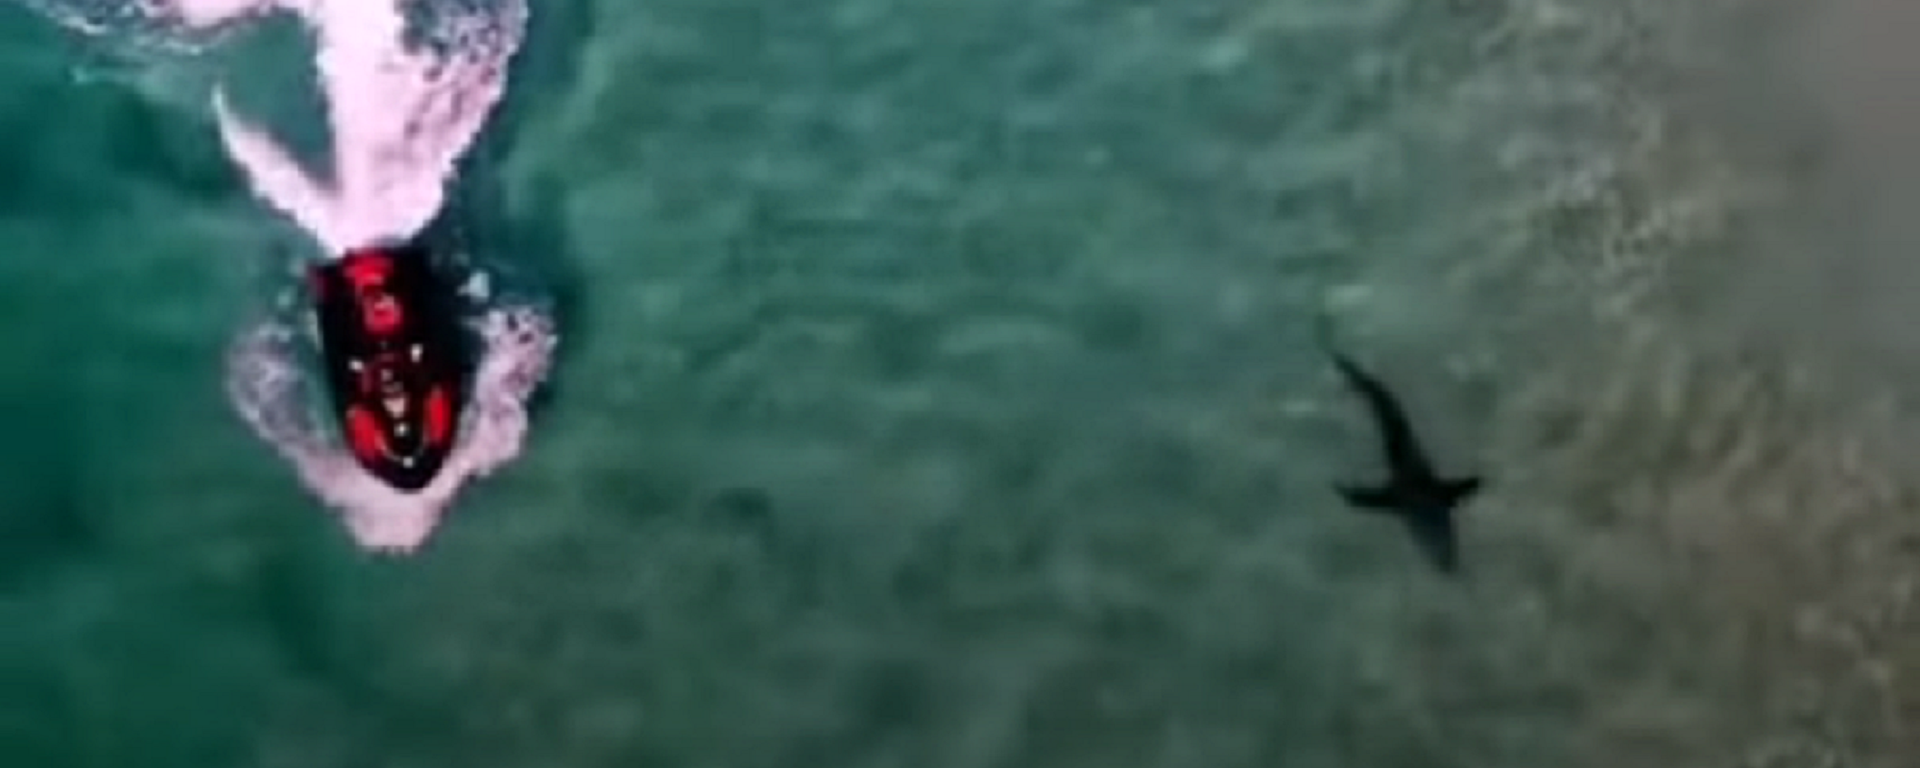 Quay video cảnh cá mập dài ba mét suýt hất người đàn ông ngã khỏi mô tô nước  - Sputnik Việt Nam, 1920, 14.08.2021